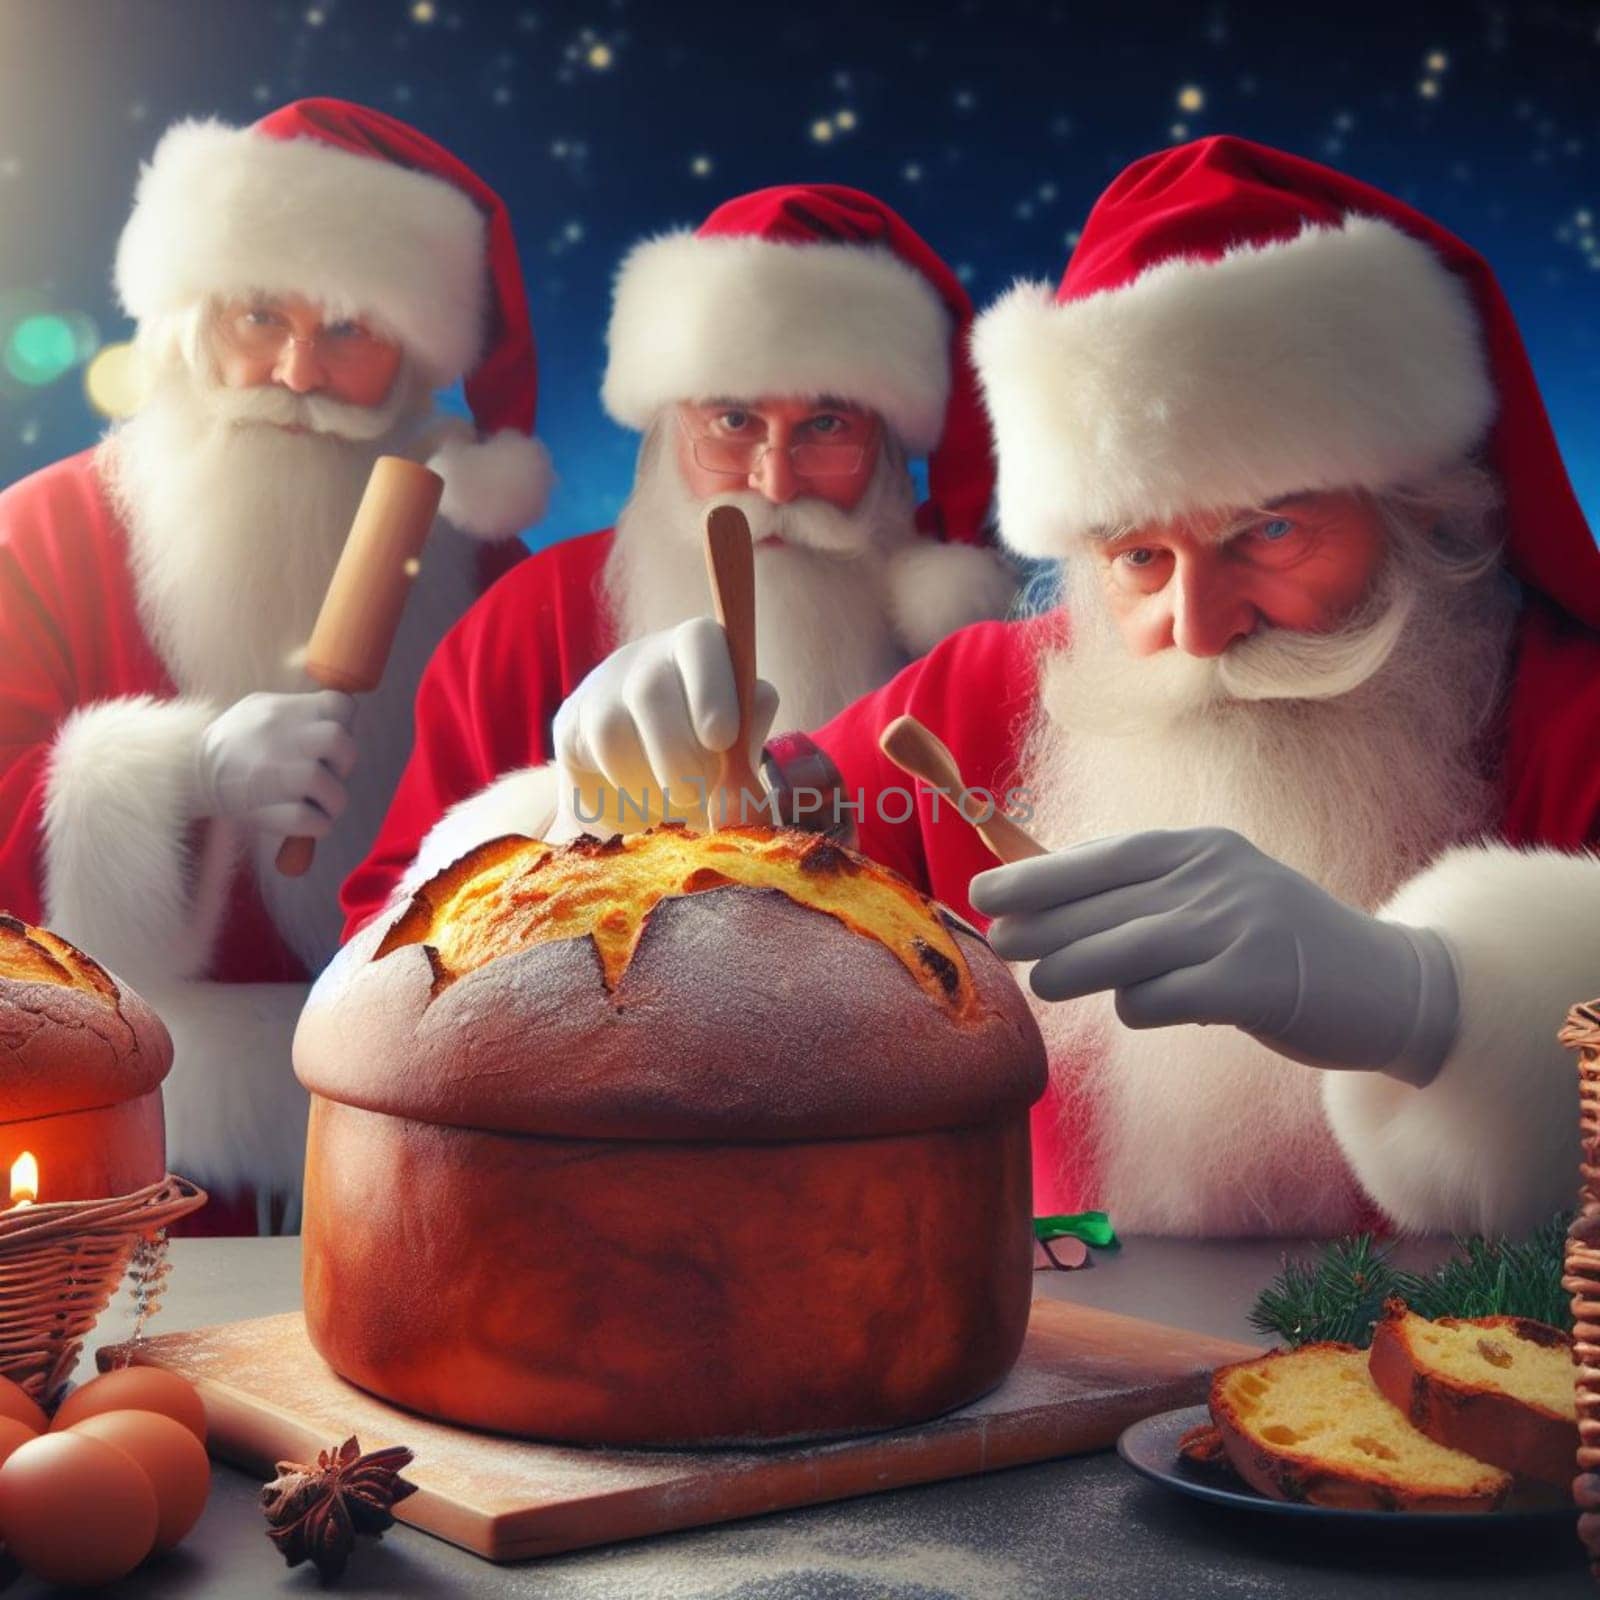 santa claus bake panettone italian christmas sweet cake in xmas atmospehere by verbano